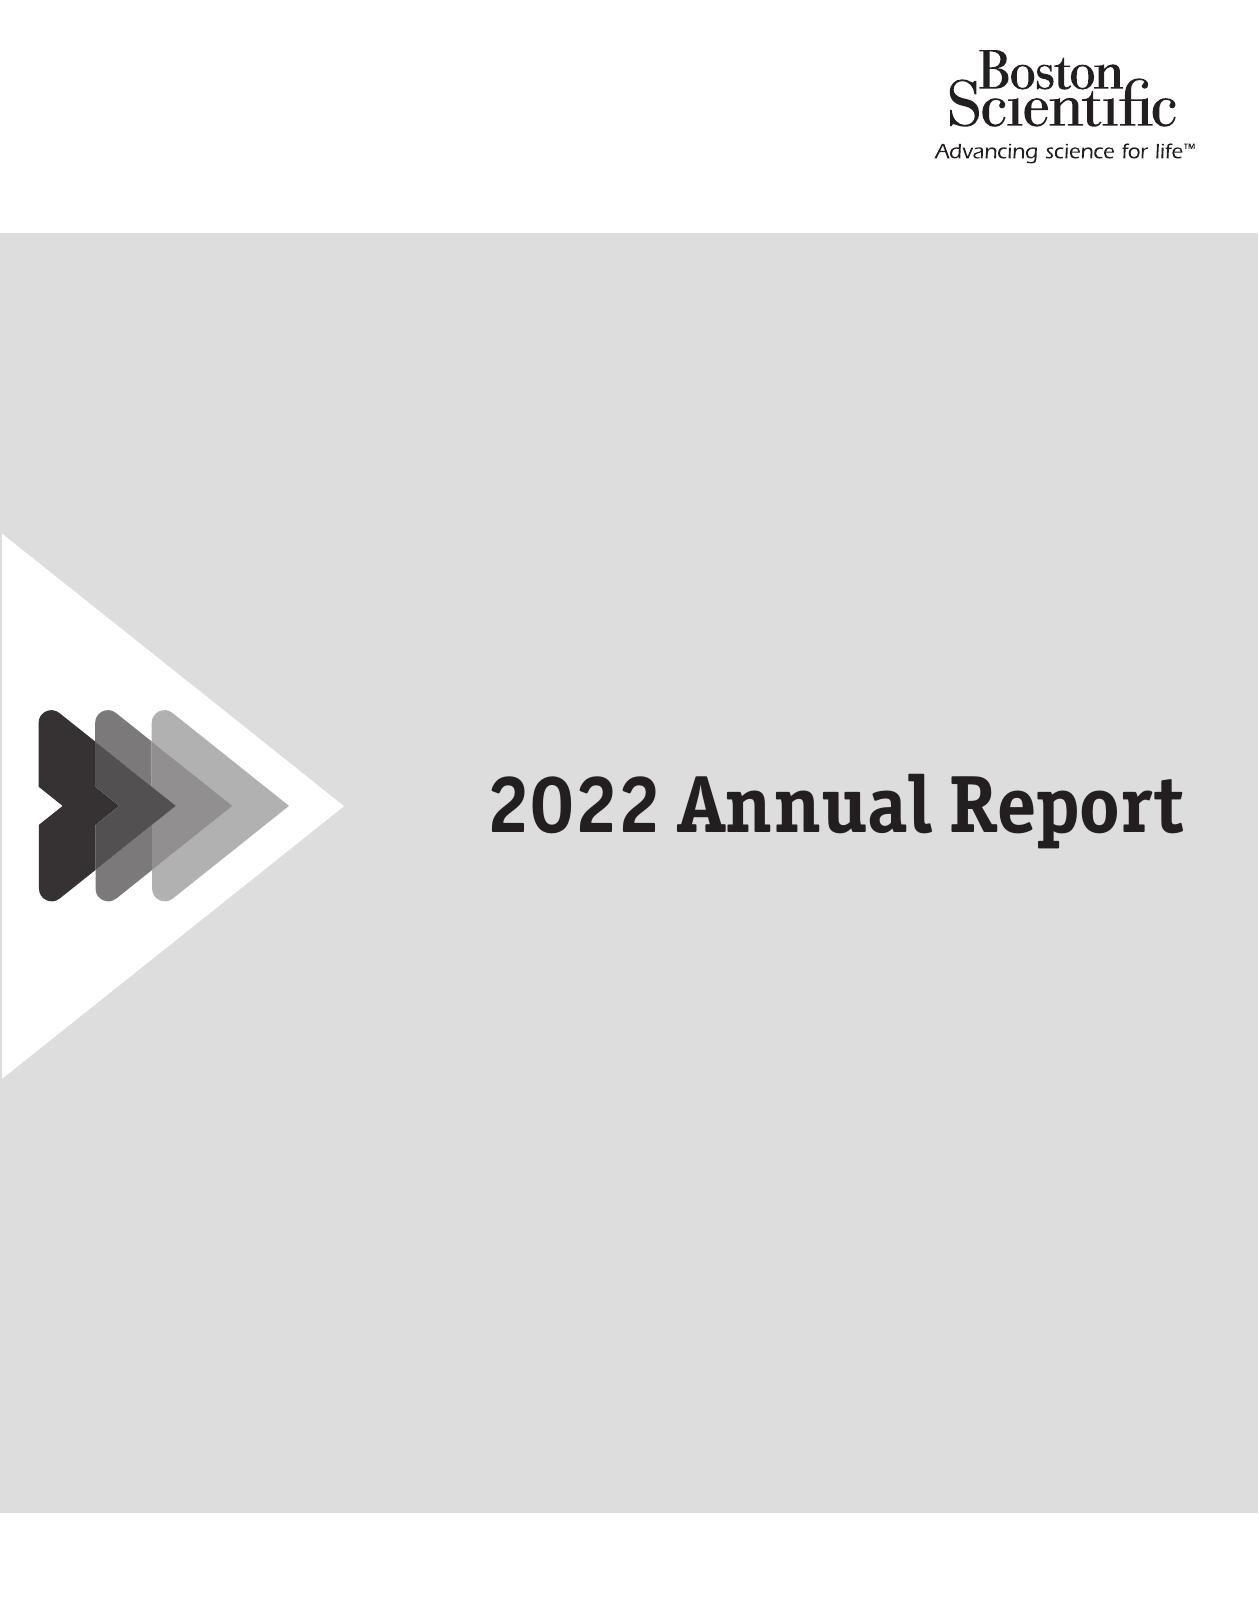 BOSTONSCIENTIFIC 2022 Annual Report